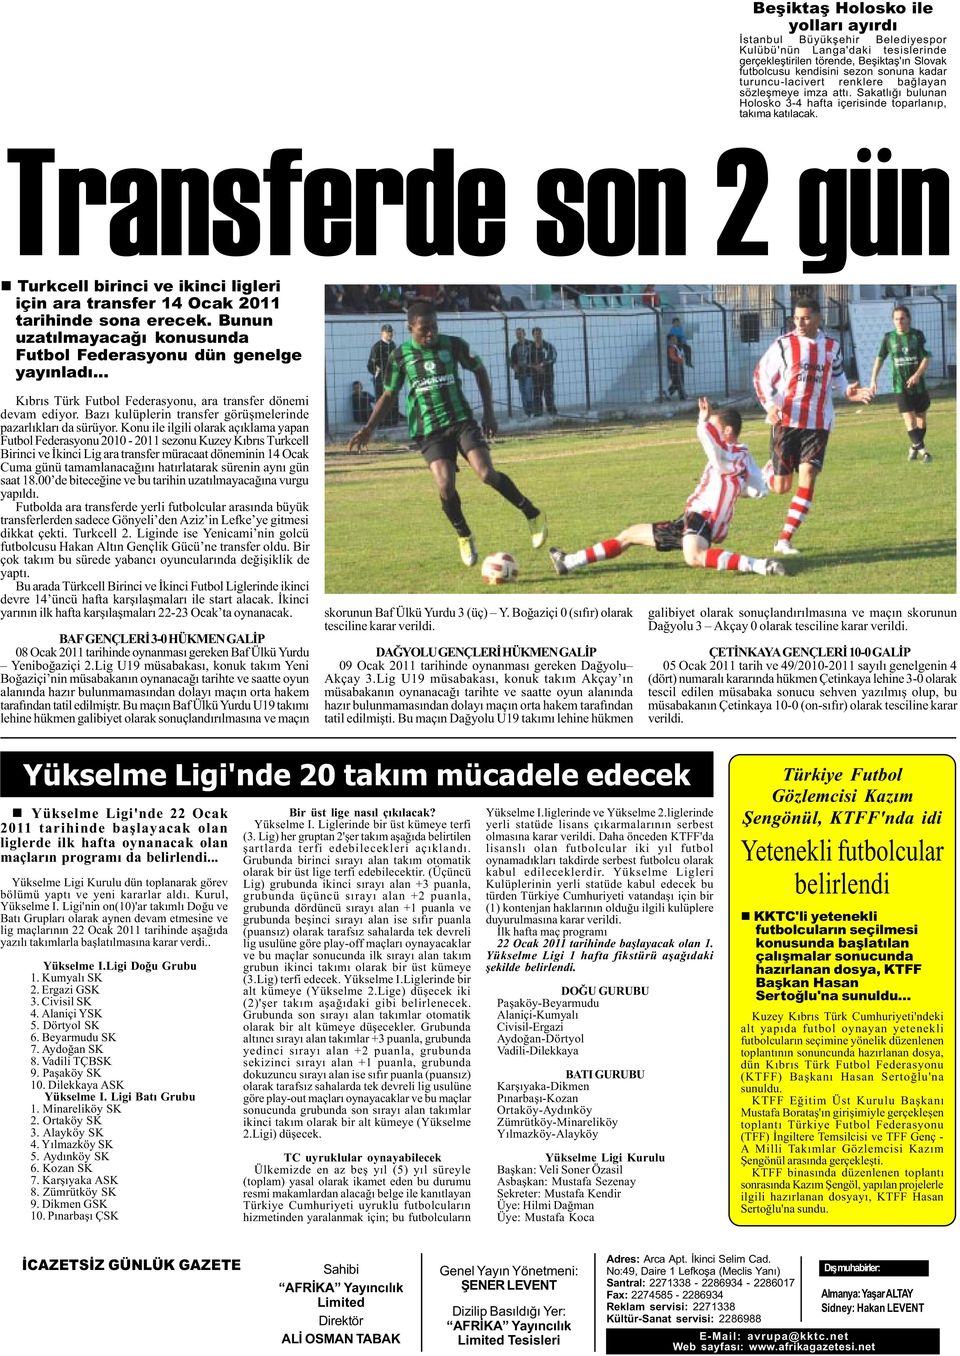 Transferde son 2 gün n Turkcell birinci ve ikinci ligleri için ara transfer 14 Ocak 2011 tarihinde sona erecek. Bunun uzatýlmayacaðý konusunda Futbol Federasyonu dün genelge yayýnladý.